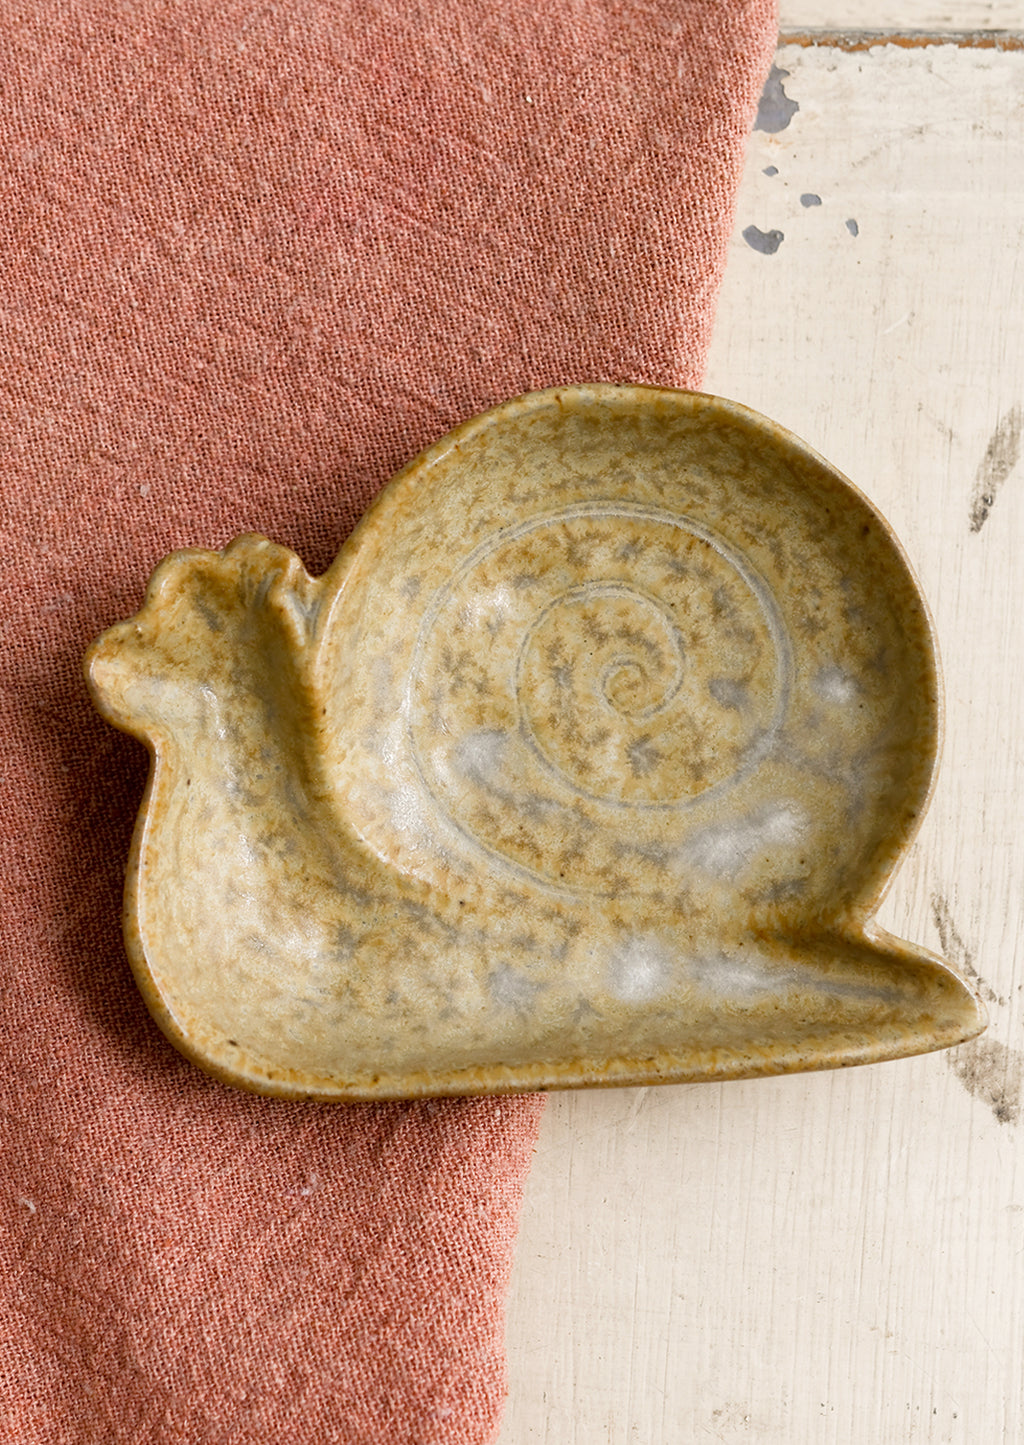 Snail: A snail shaped trinket dish in beige.